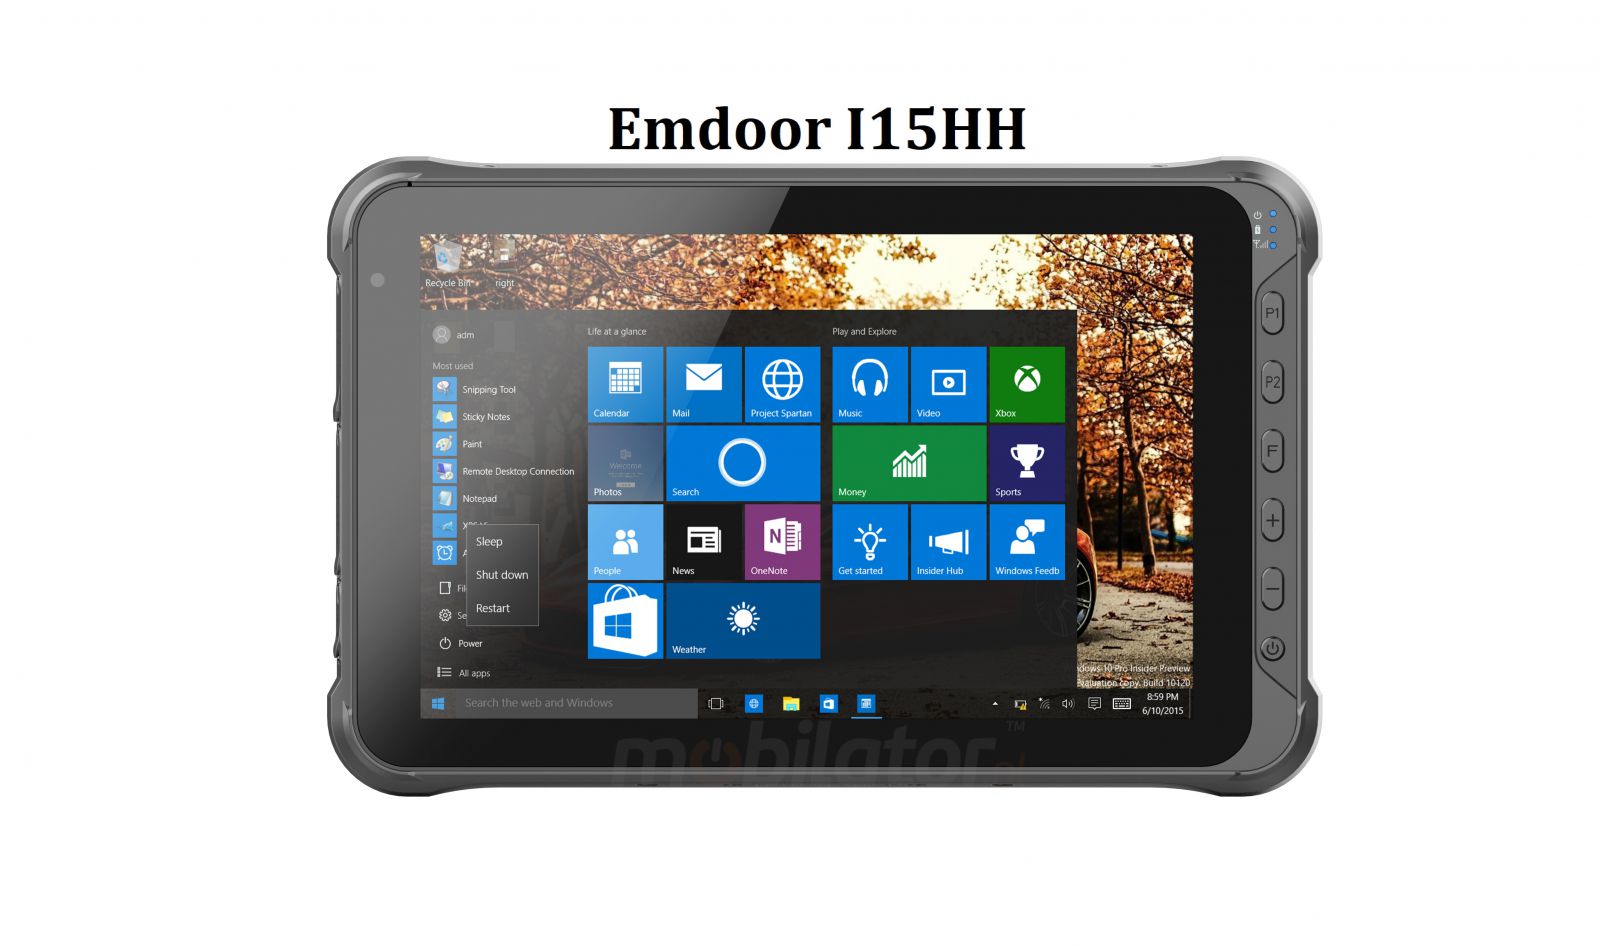 Emdoor I15HH v.11 - Odporny na upadki dziesiciocalowy tablet z BT 4.2, 4G, 4GB RAM pamici, dyskiem 128GB, czytnikiem kodw 1D Honeywell oraz UHF